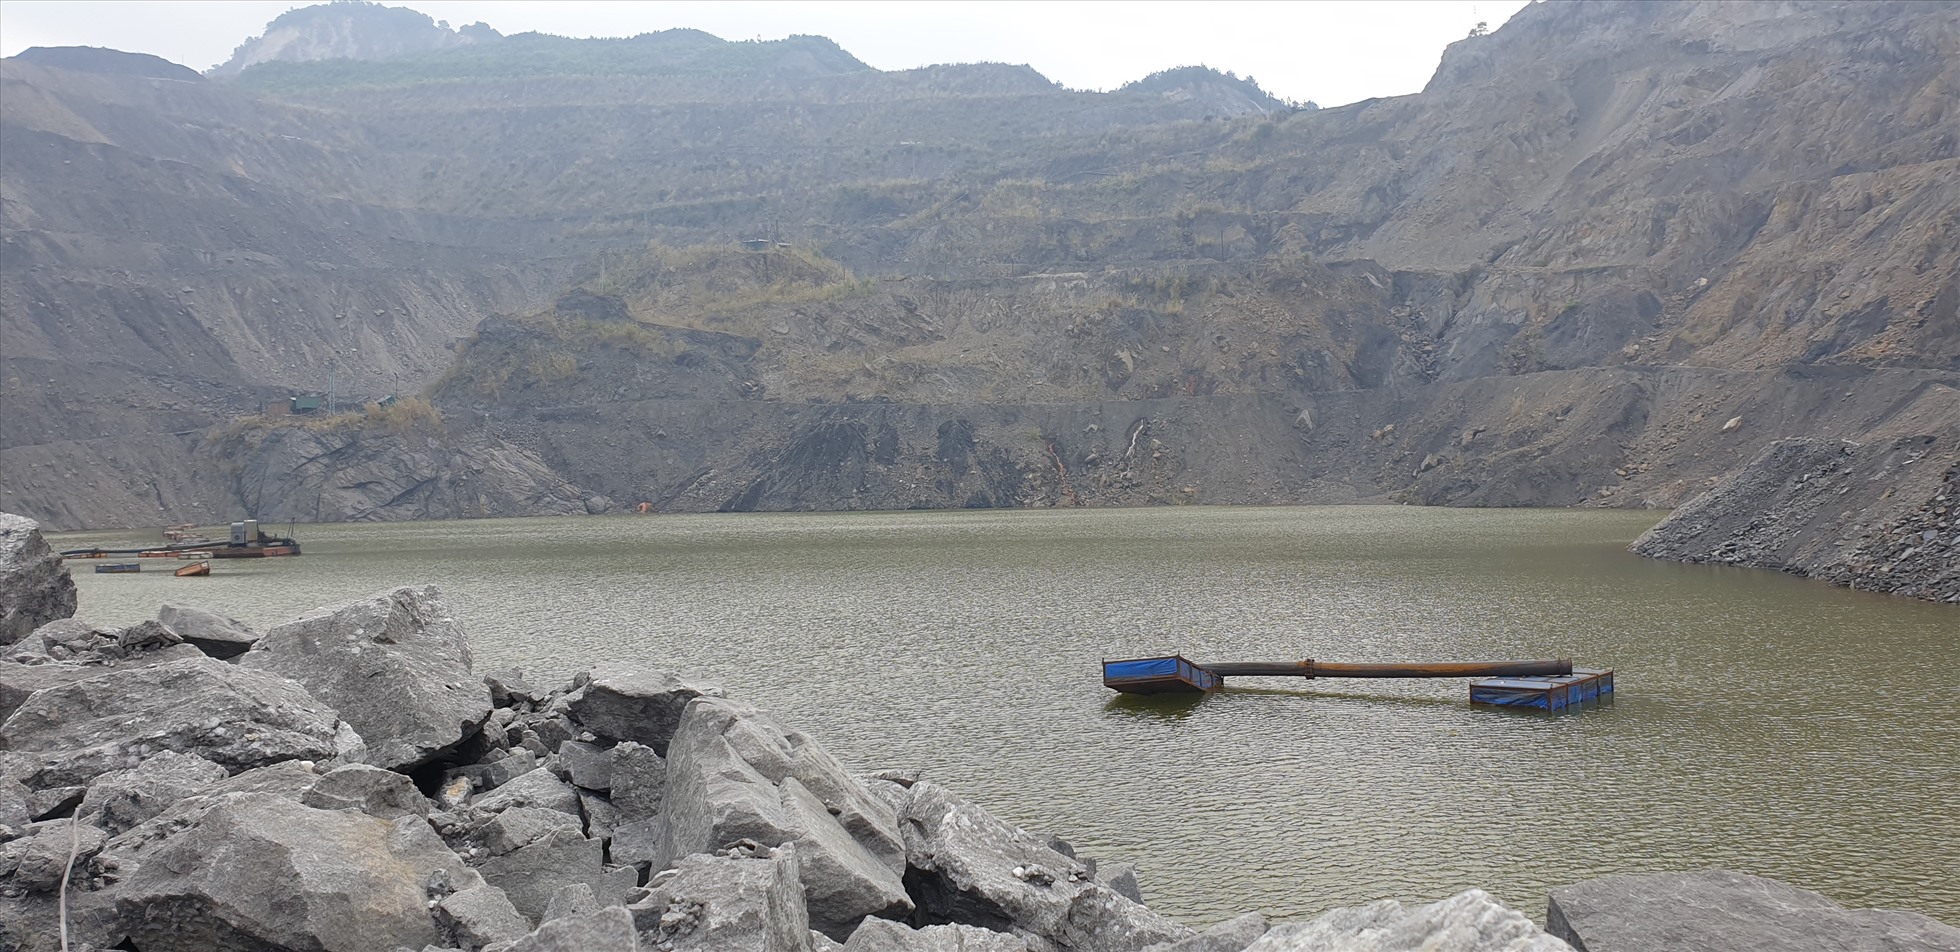 Nước dưới đáy moong than 917. Moong than này đang được quy hoạch để làm hồ chứa nước sinh hoạt của Hạ Long. Ảnh: Nguyễn Hùng